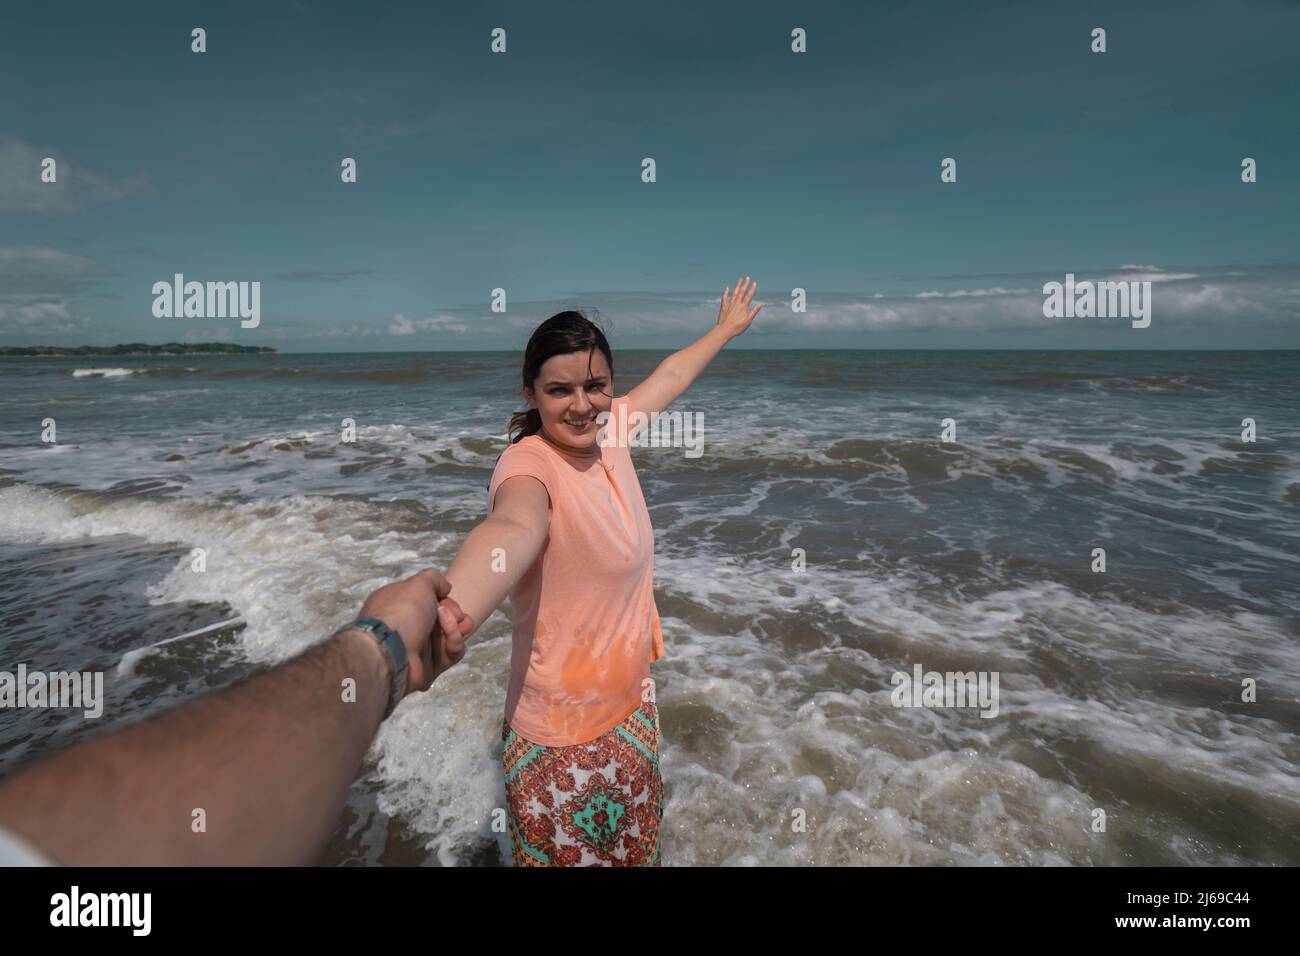 Schöne, glückliche junge hispanische Frau, die die Hand ihres Partners am Strand hält und während eines sonnigen Mornis ein rosa Kleid mit dem Meer im Hintergrund trägt Stockfoto